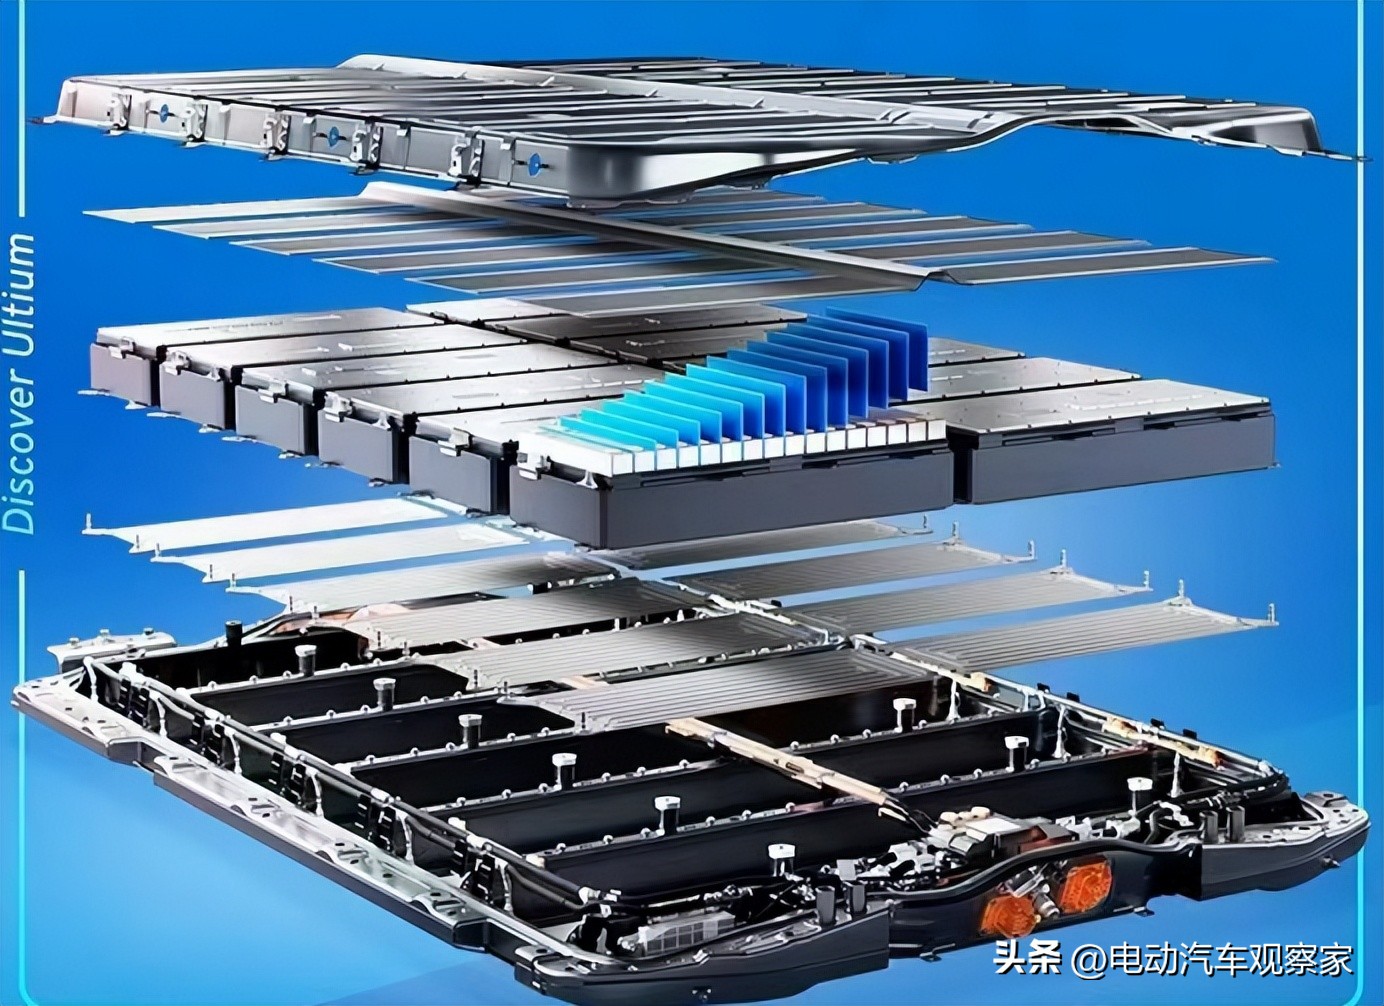 奥特能平台电池包横纵梁是通过横亘整个电池包的横纵交织立体结构,将